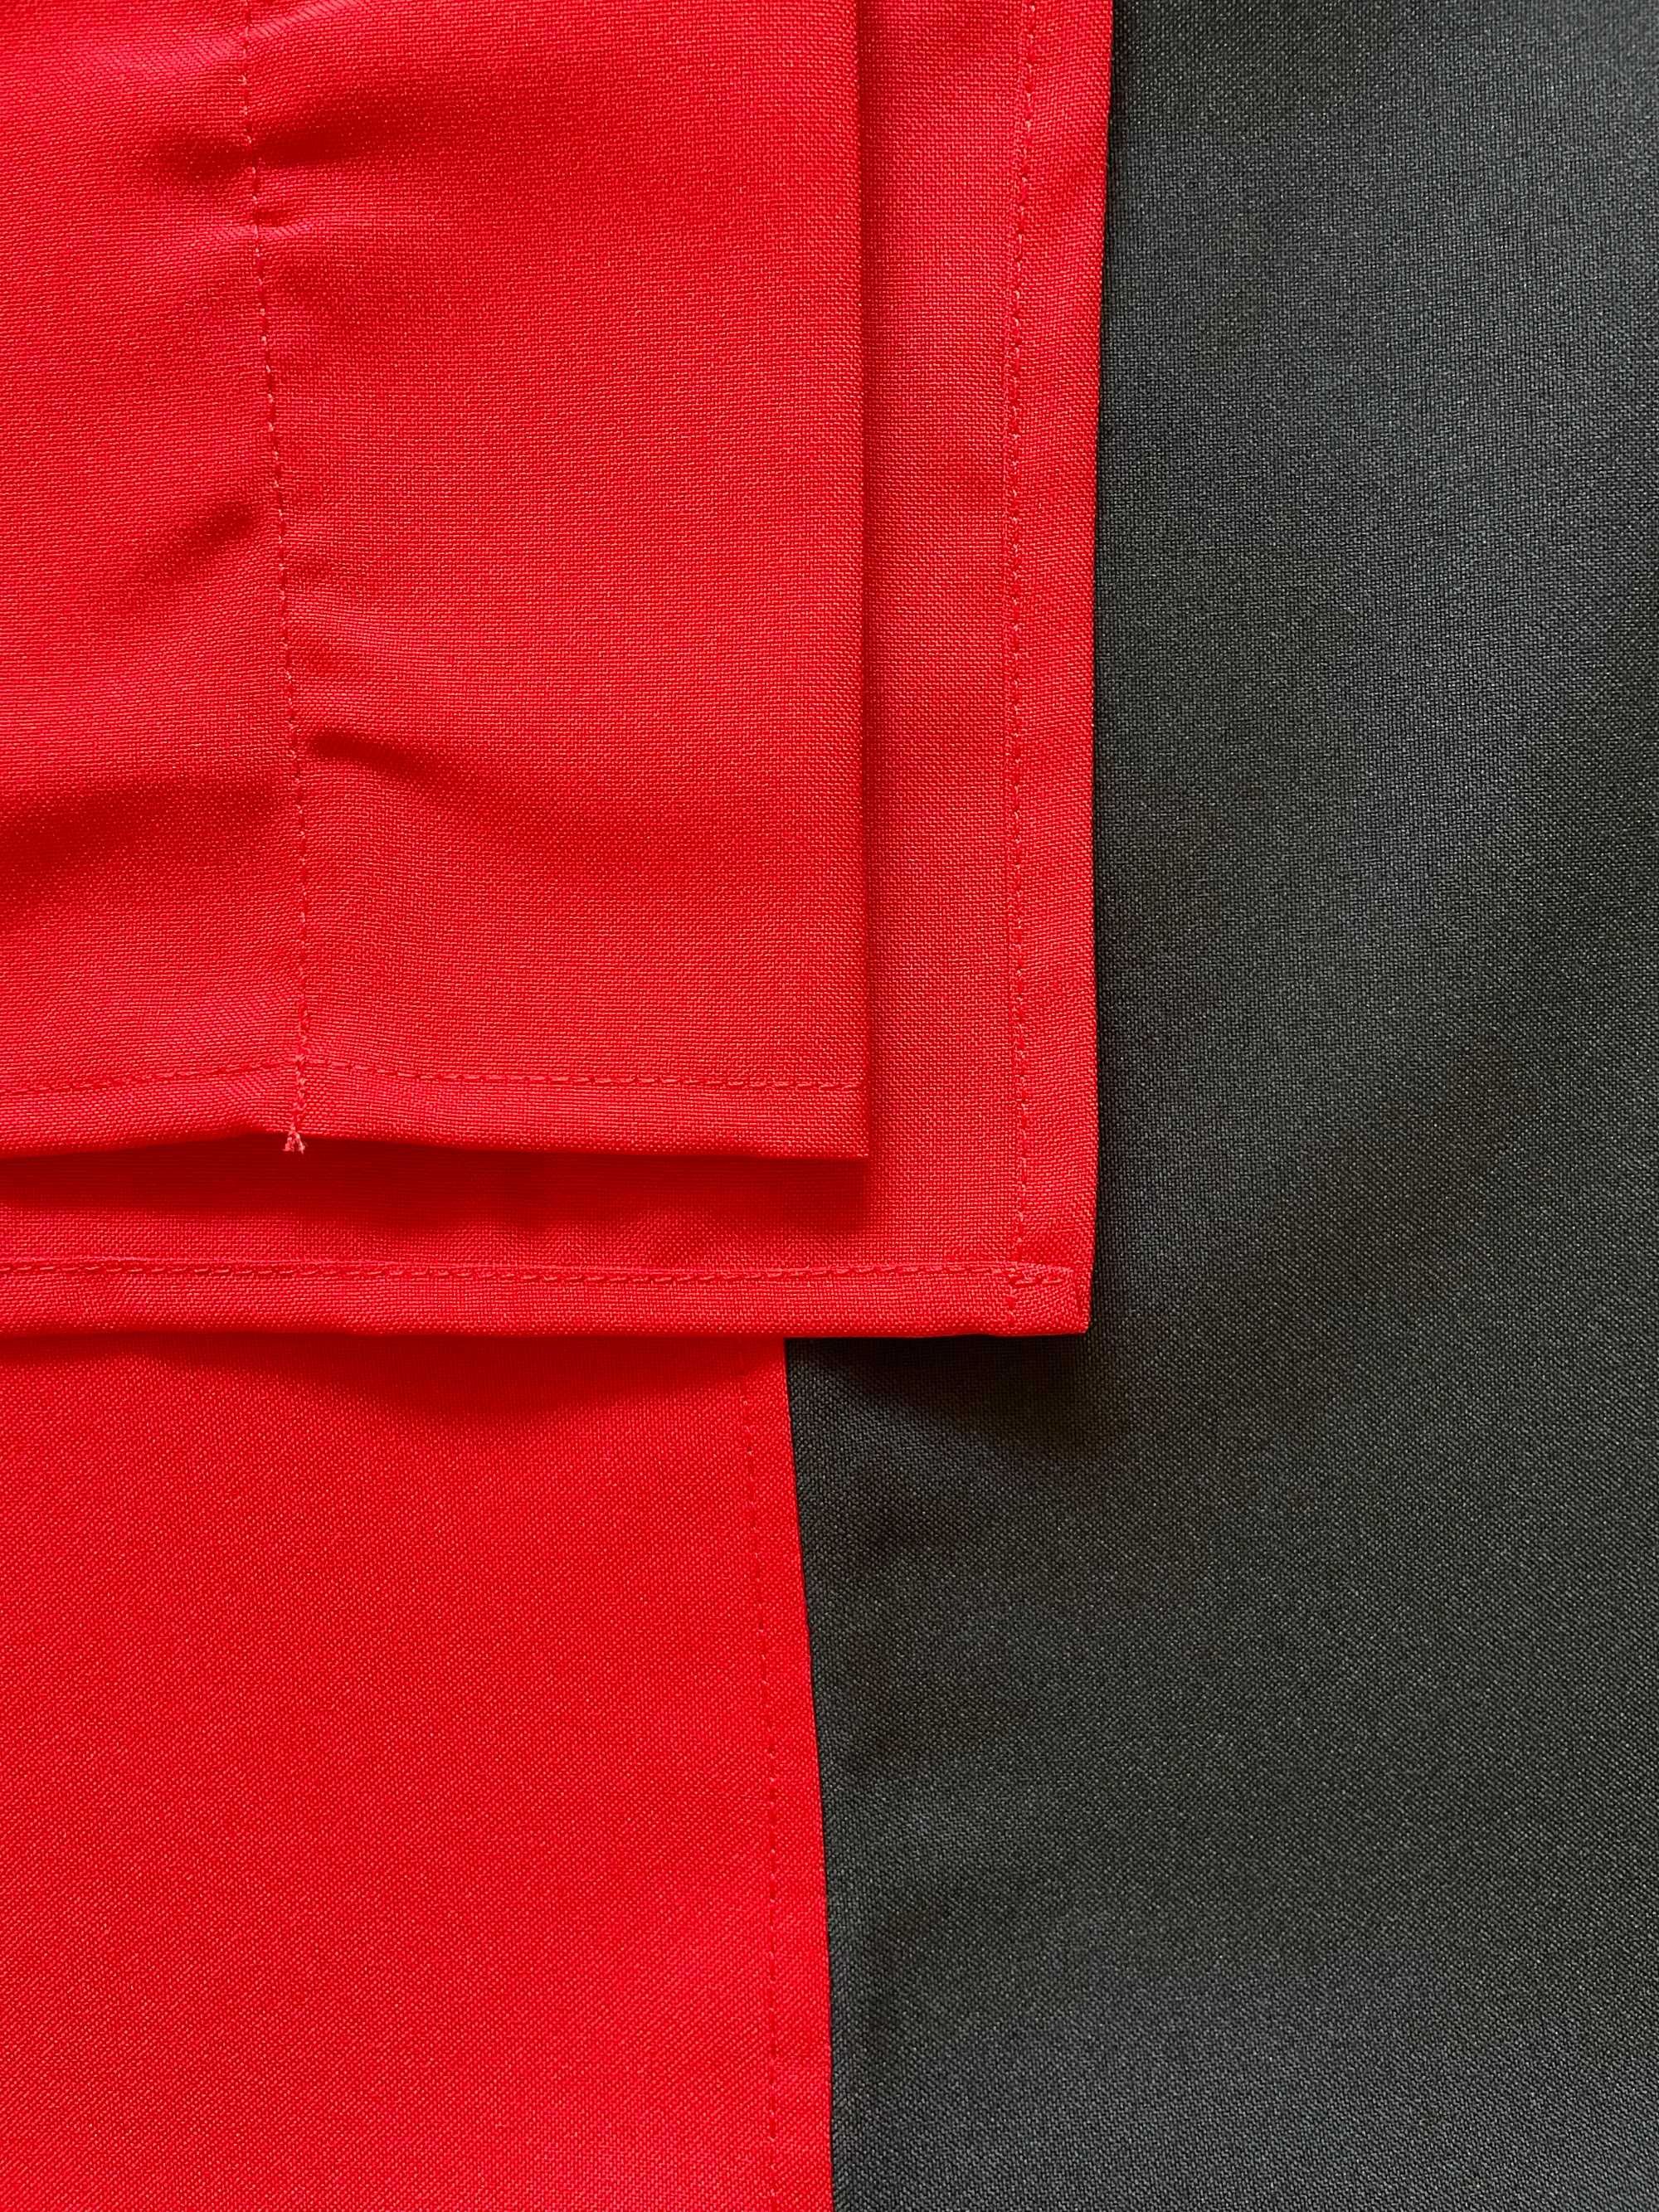 Червоно-чорний прапор/стяг ОУН-УПА 140*90 красно-черный флаг габардин